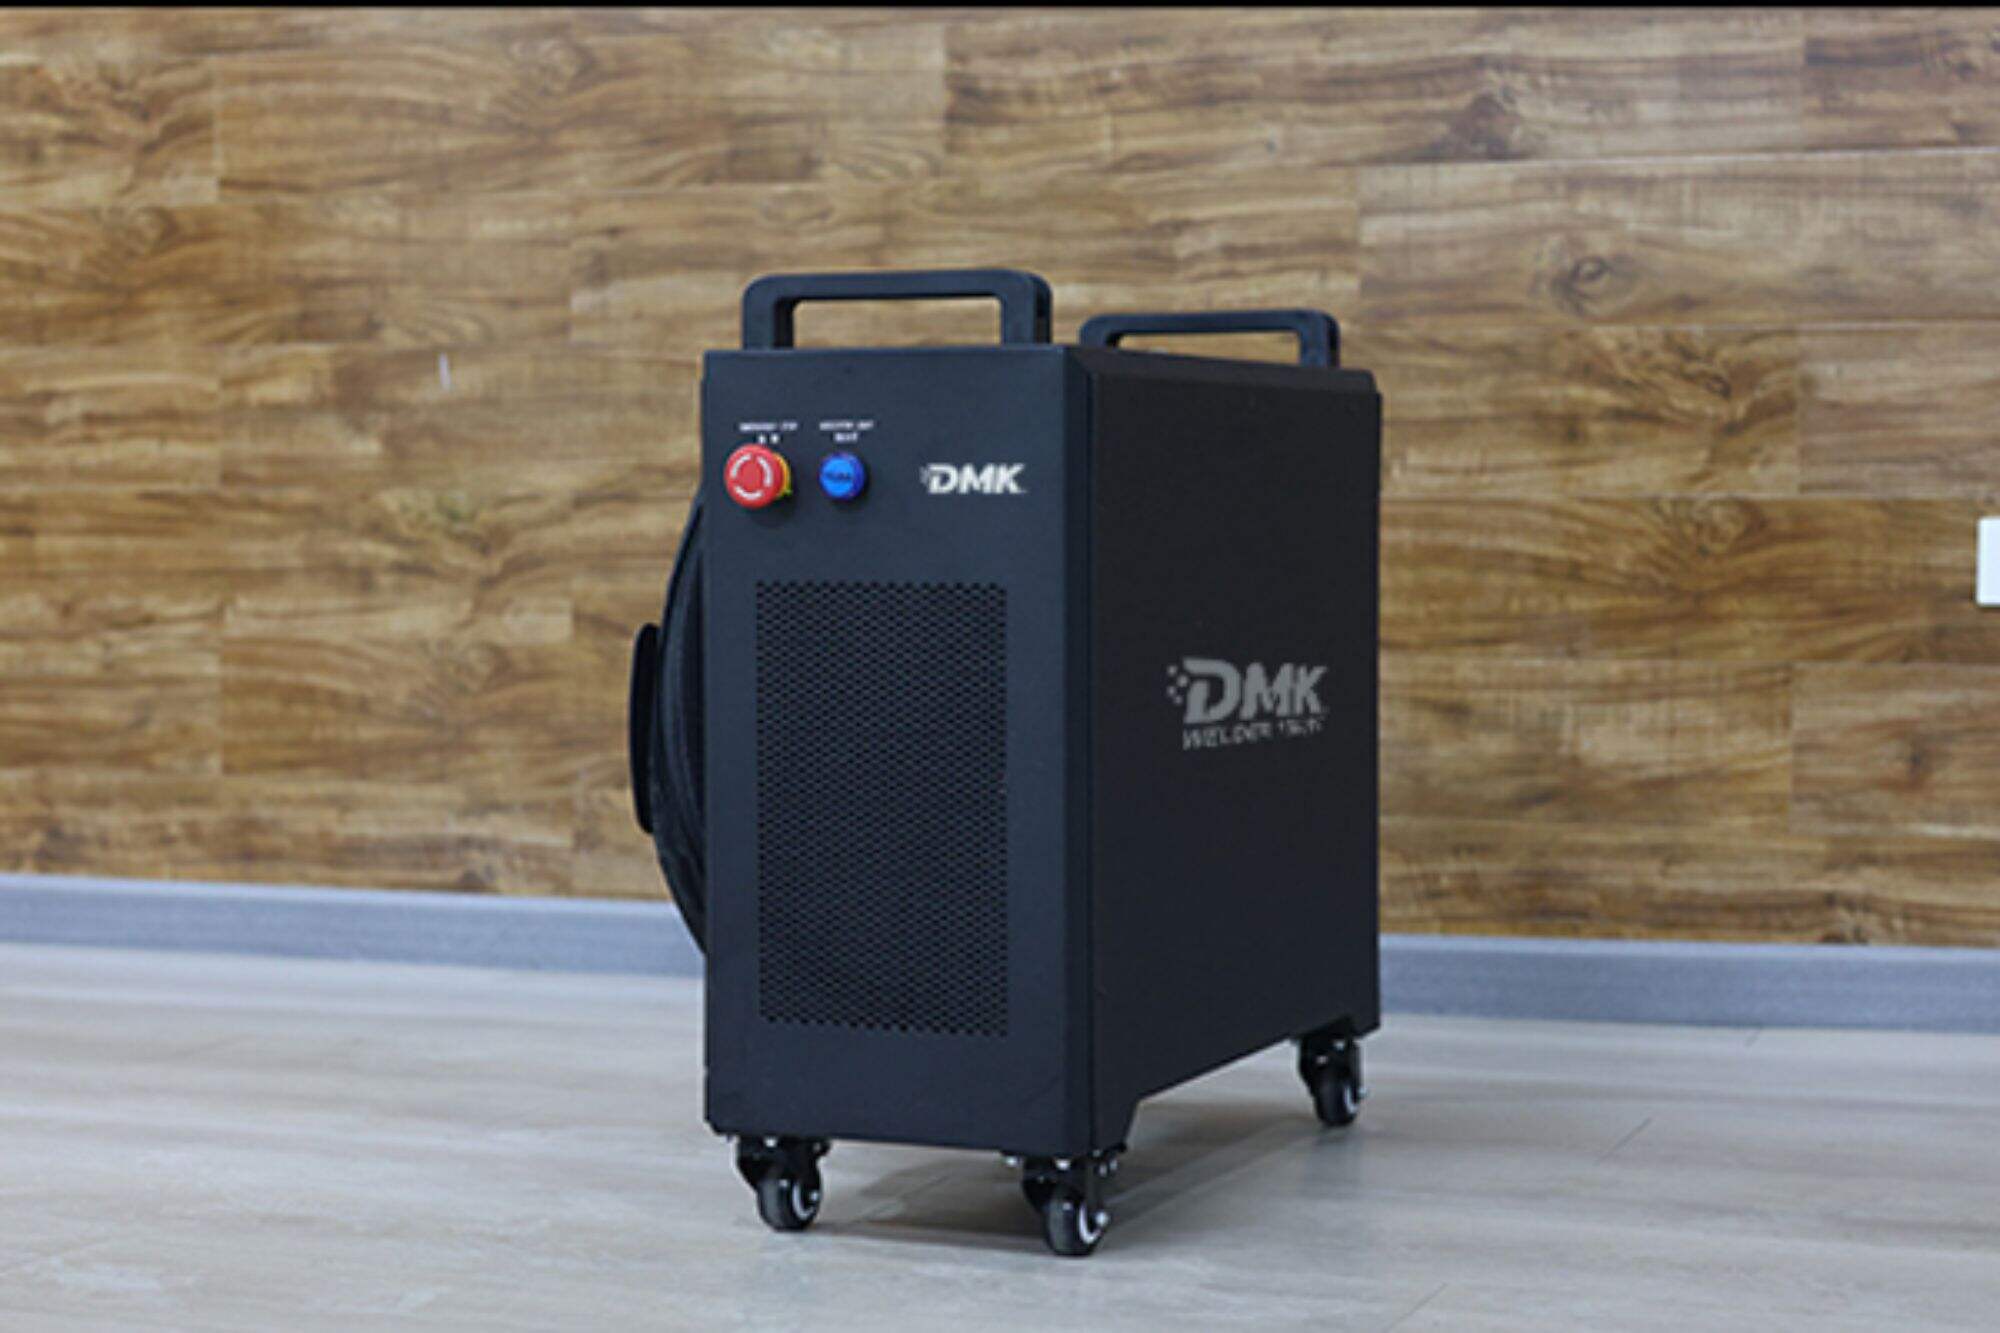 Установка мини-лазерного сварочного аппарата DMK с воздушным охлаждением Руководство по установке мини-лазерного сварочного аппарата с воздушным охлаждением DMK